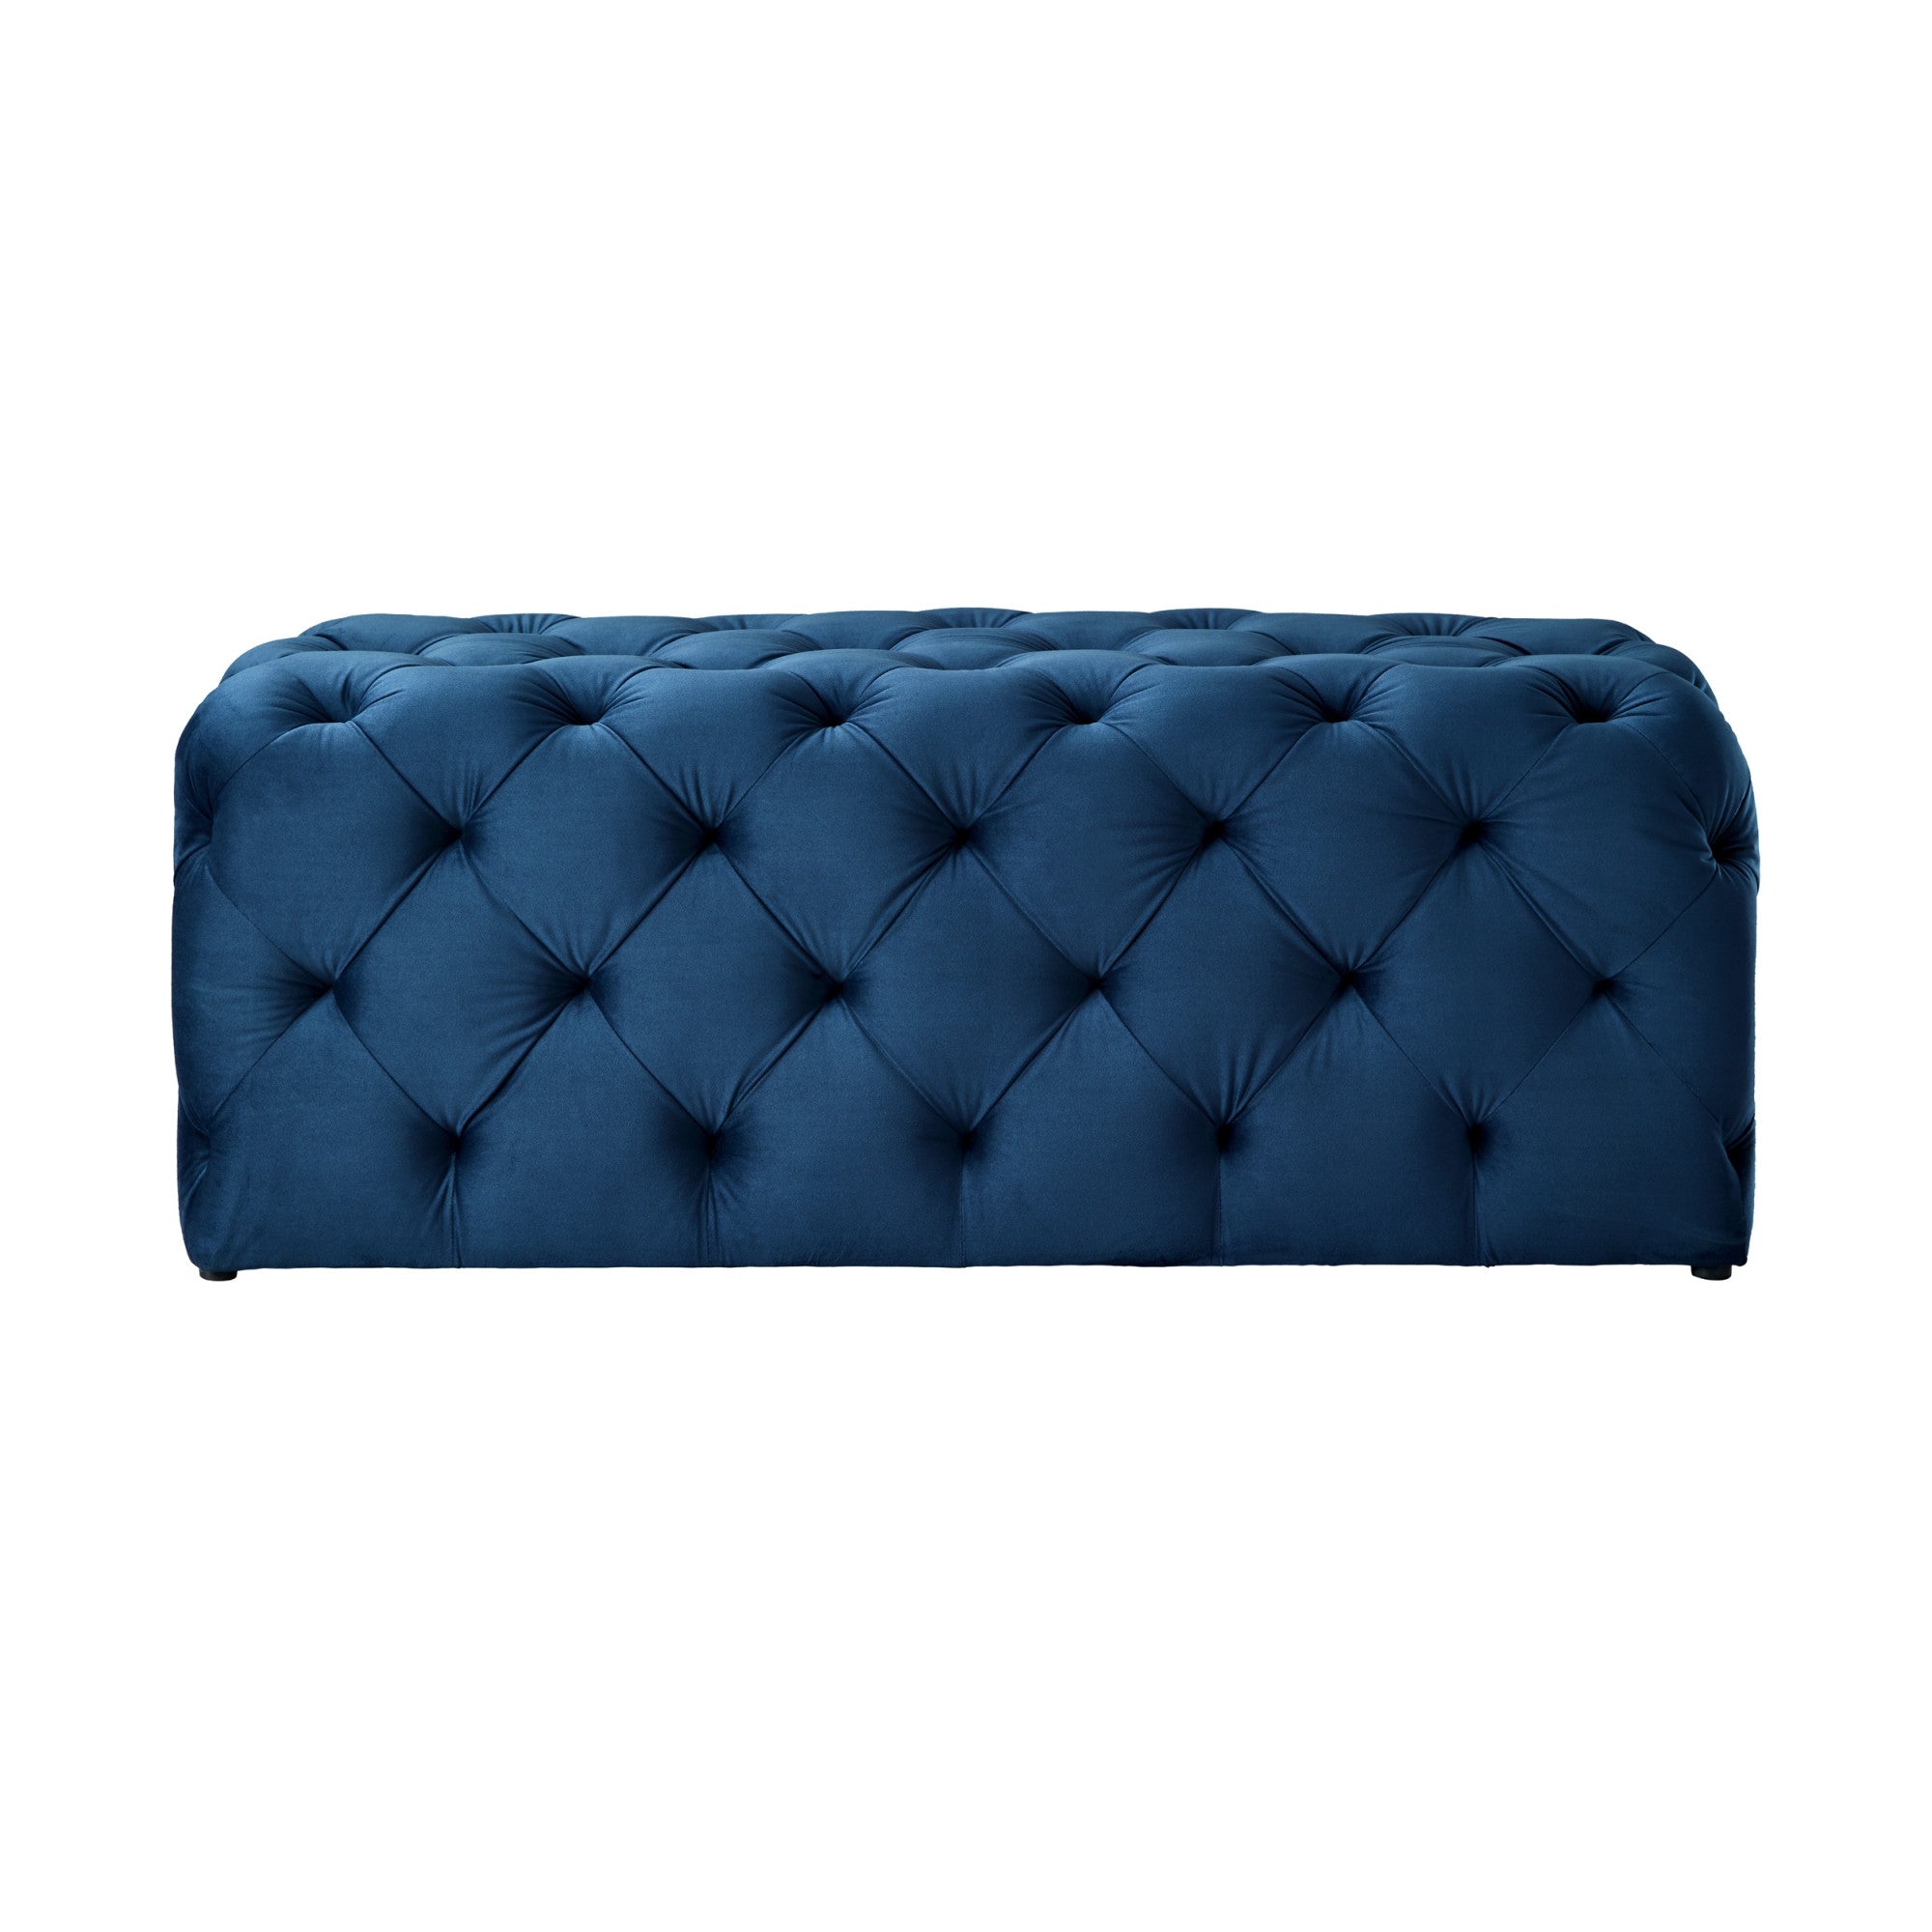 48" Navy Blue And Black Upholstered Velvet Bench